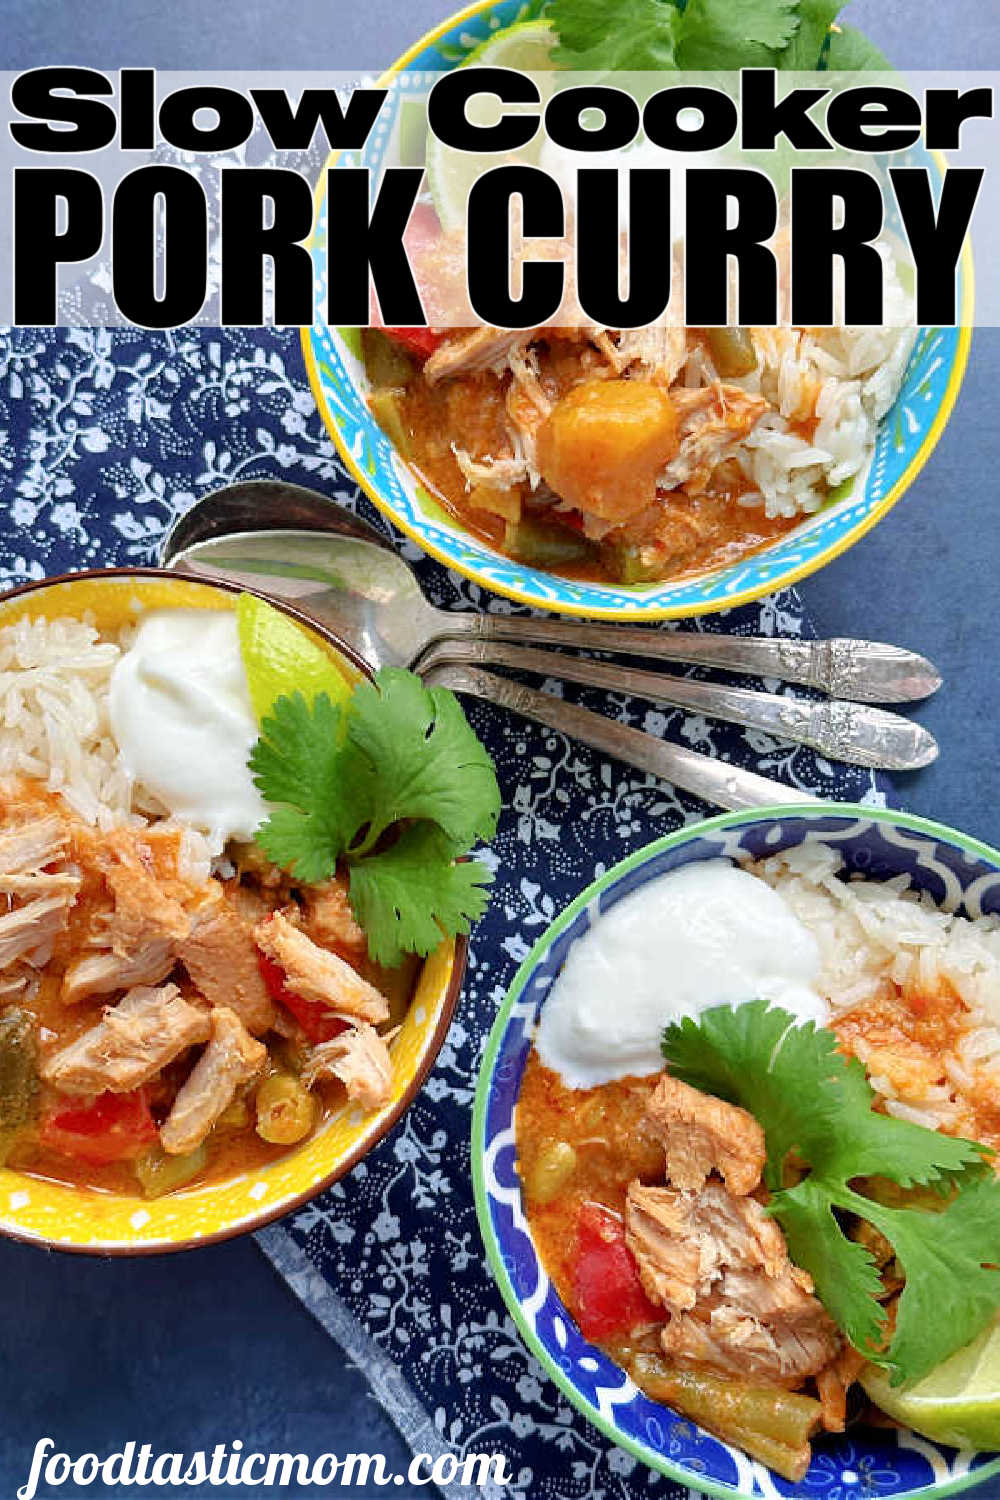 Pork Curry | Foodtastic Mom #porkcurry #porkrecipes #curryrecipes #slowcookerrecipes via @foodtasticmom